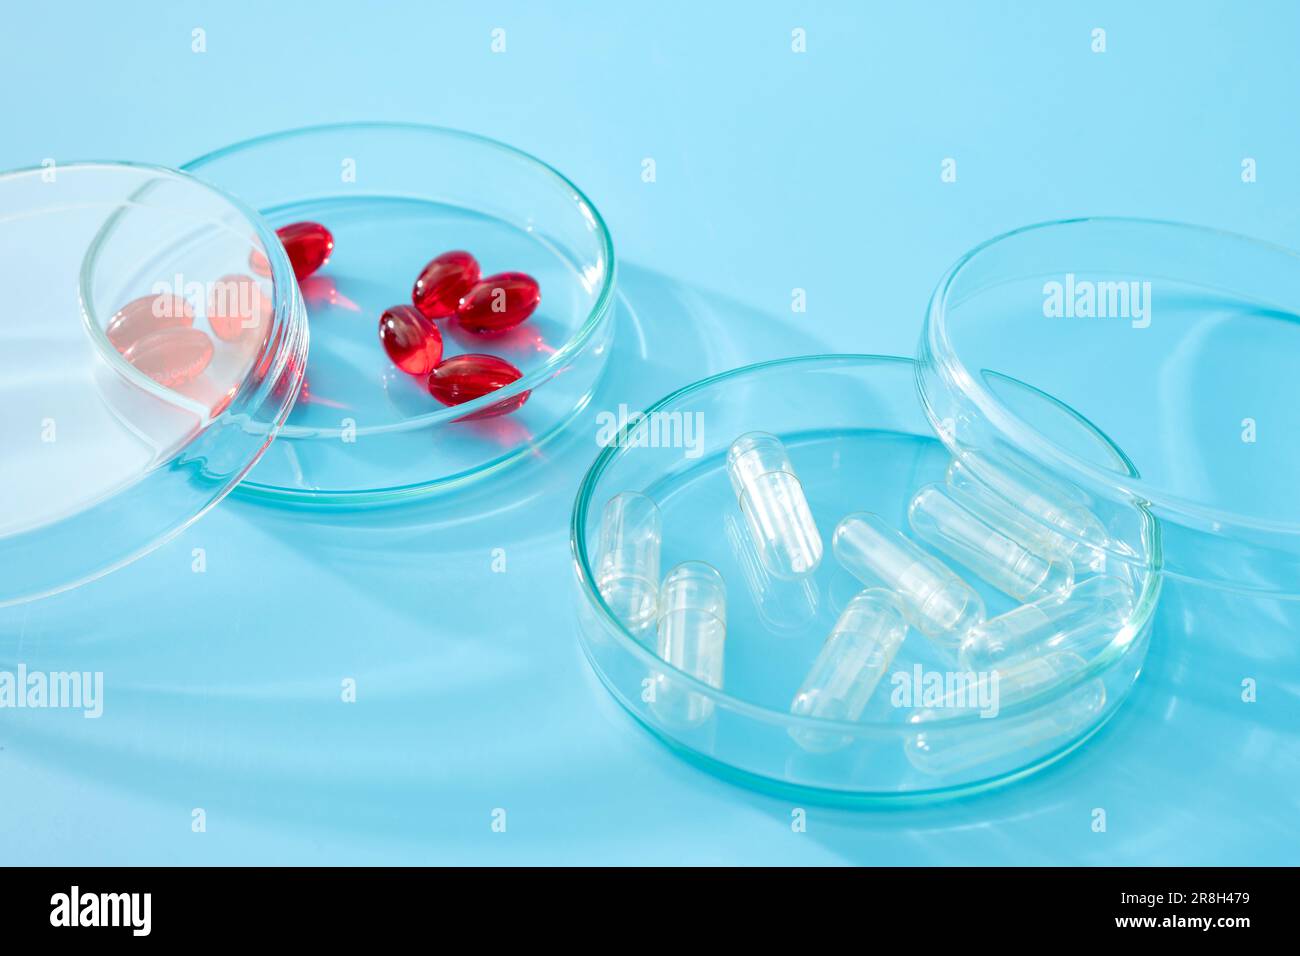 Pillole rosse e capsule placebo vuote in vetro Petri Dish Concept per la ricerca clinica controllata con placebo, ultimi studi di ricerca medica e campione Foto Stock